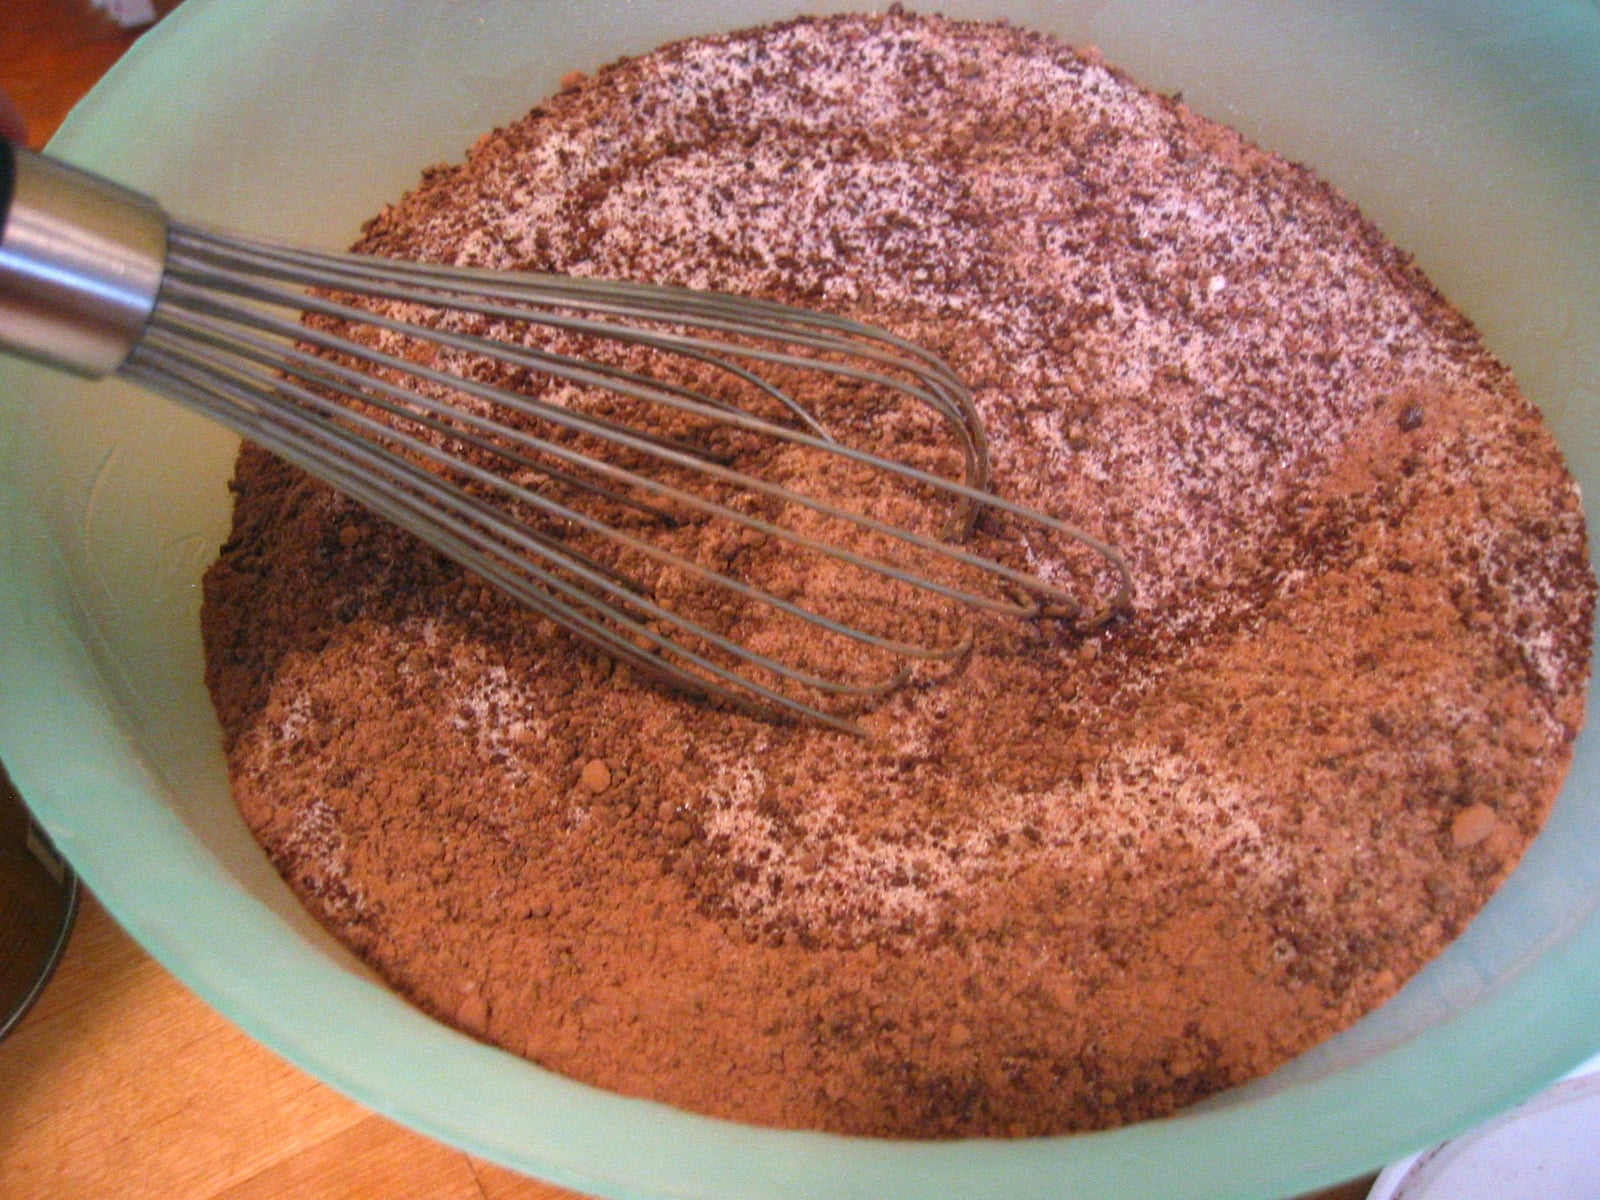 Add Dutch process cocoa powder.